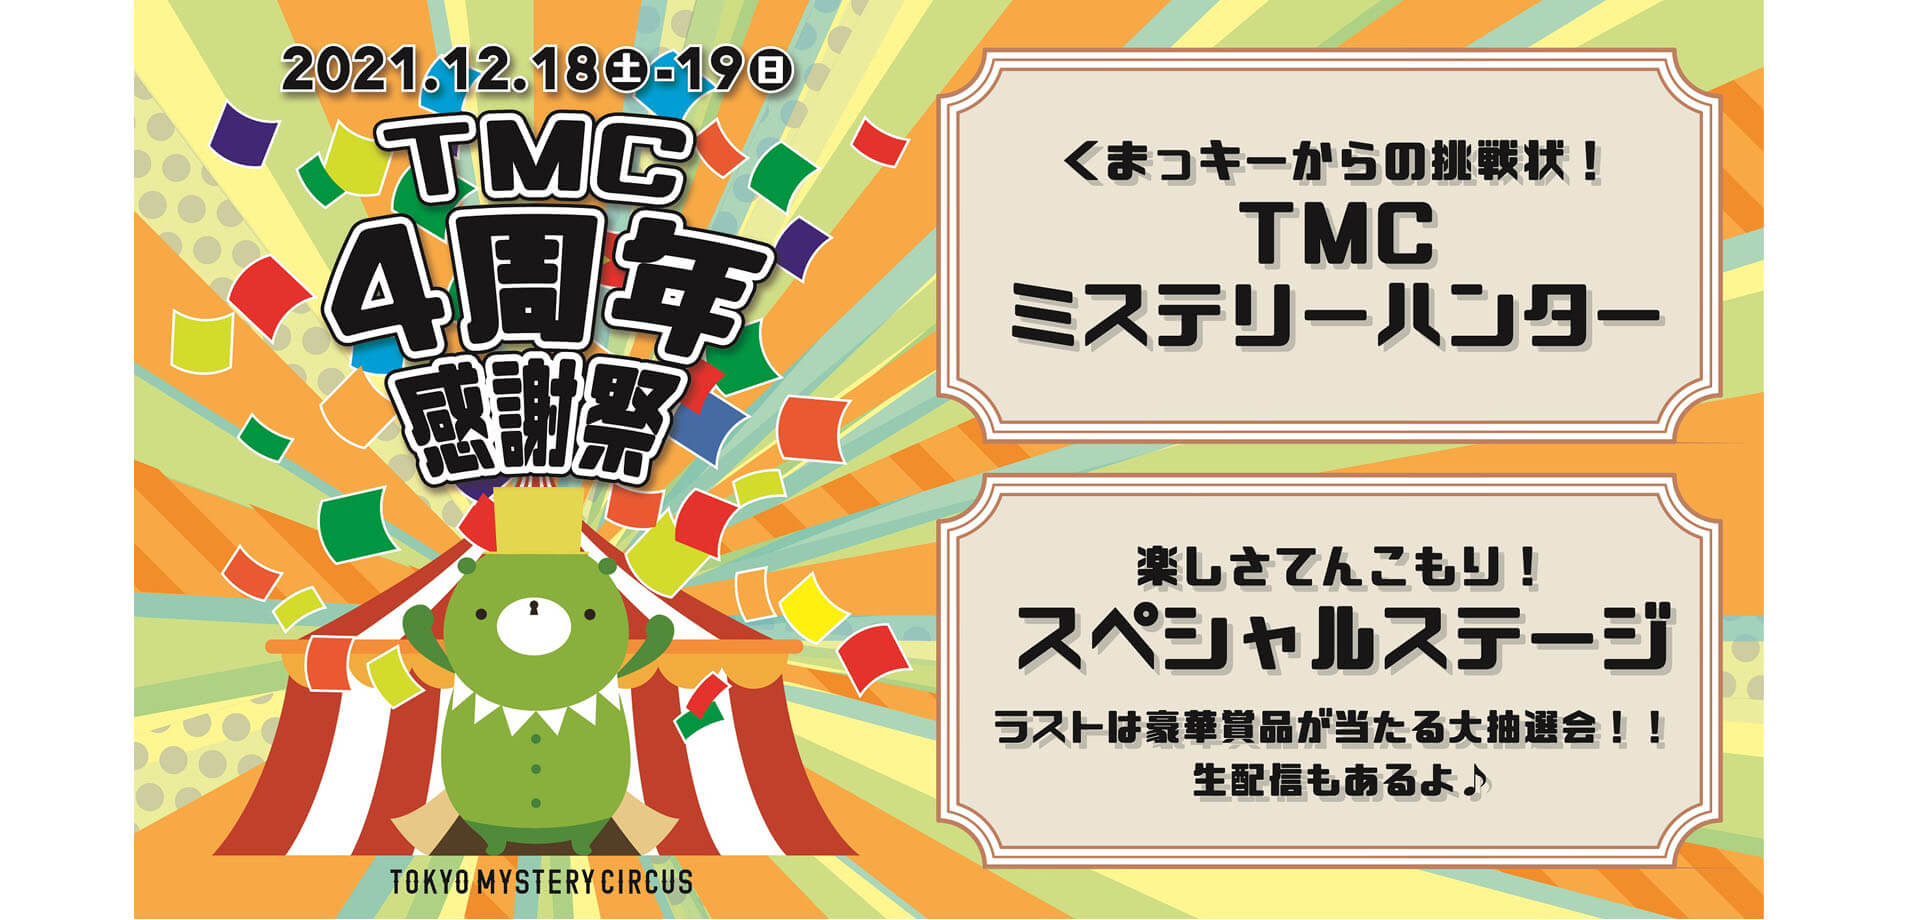 東京ミステリーサーカス「TMC4周年感謝祭」